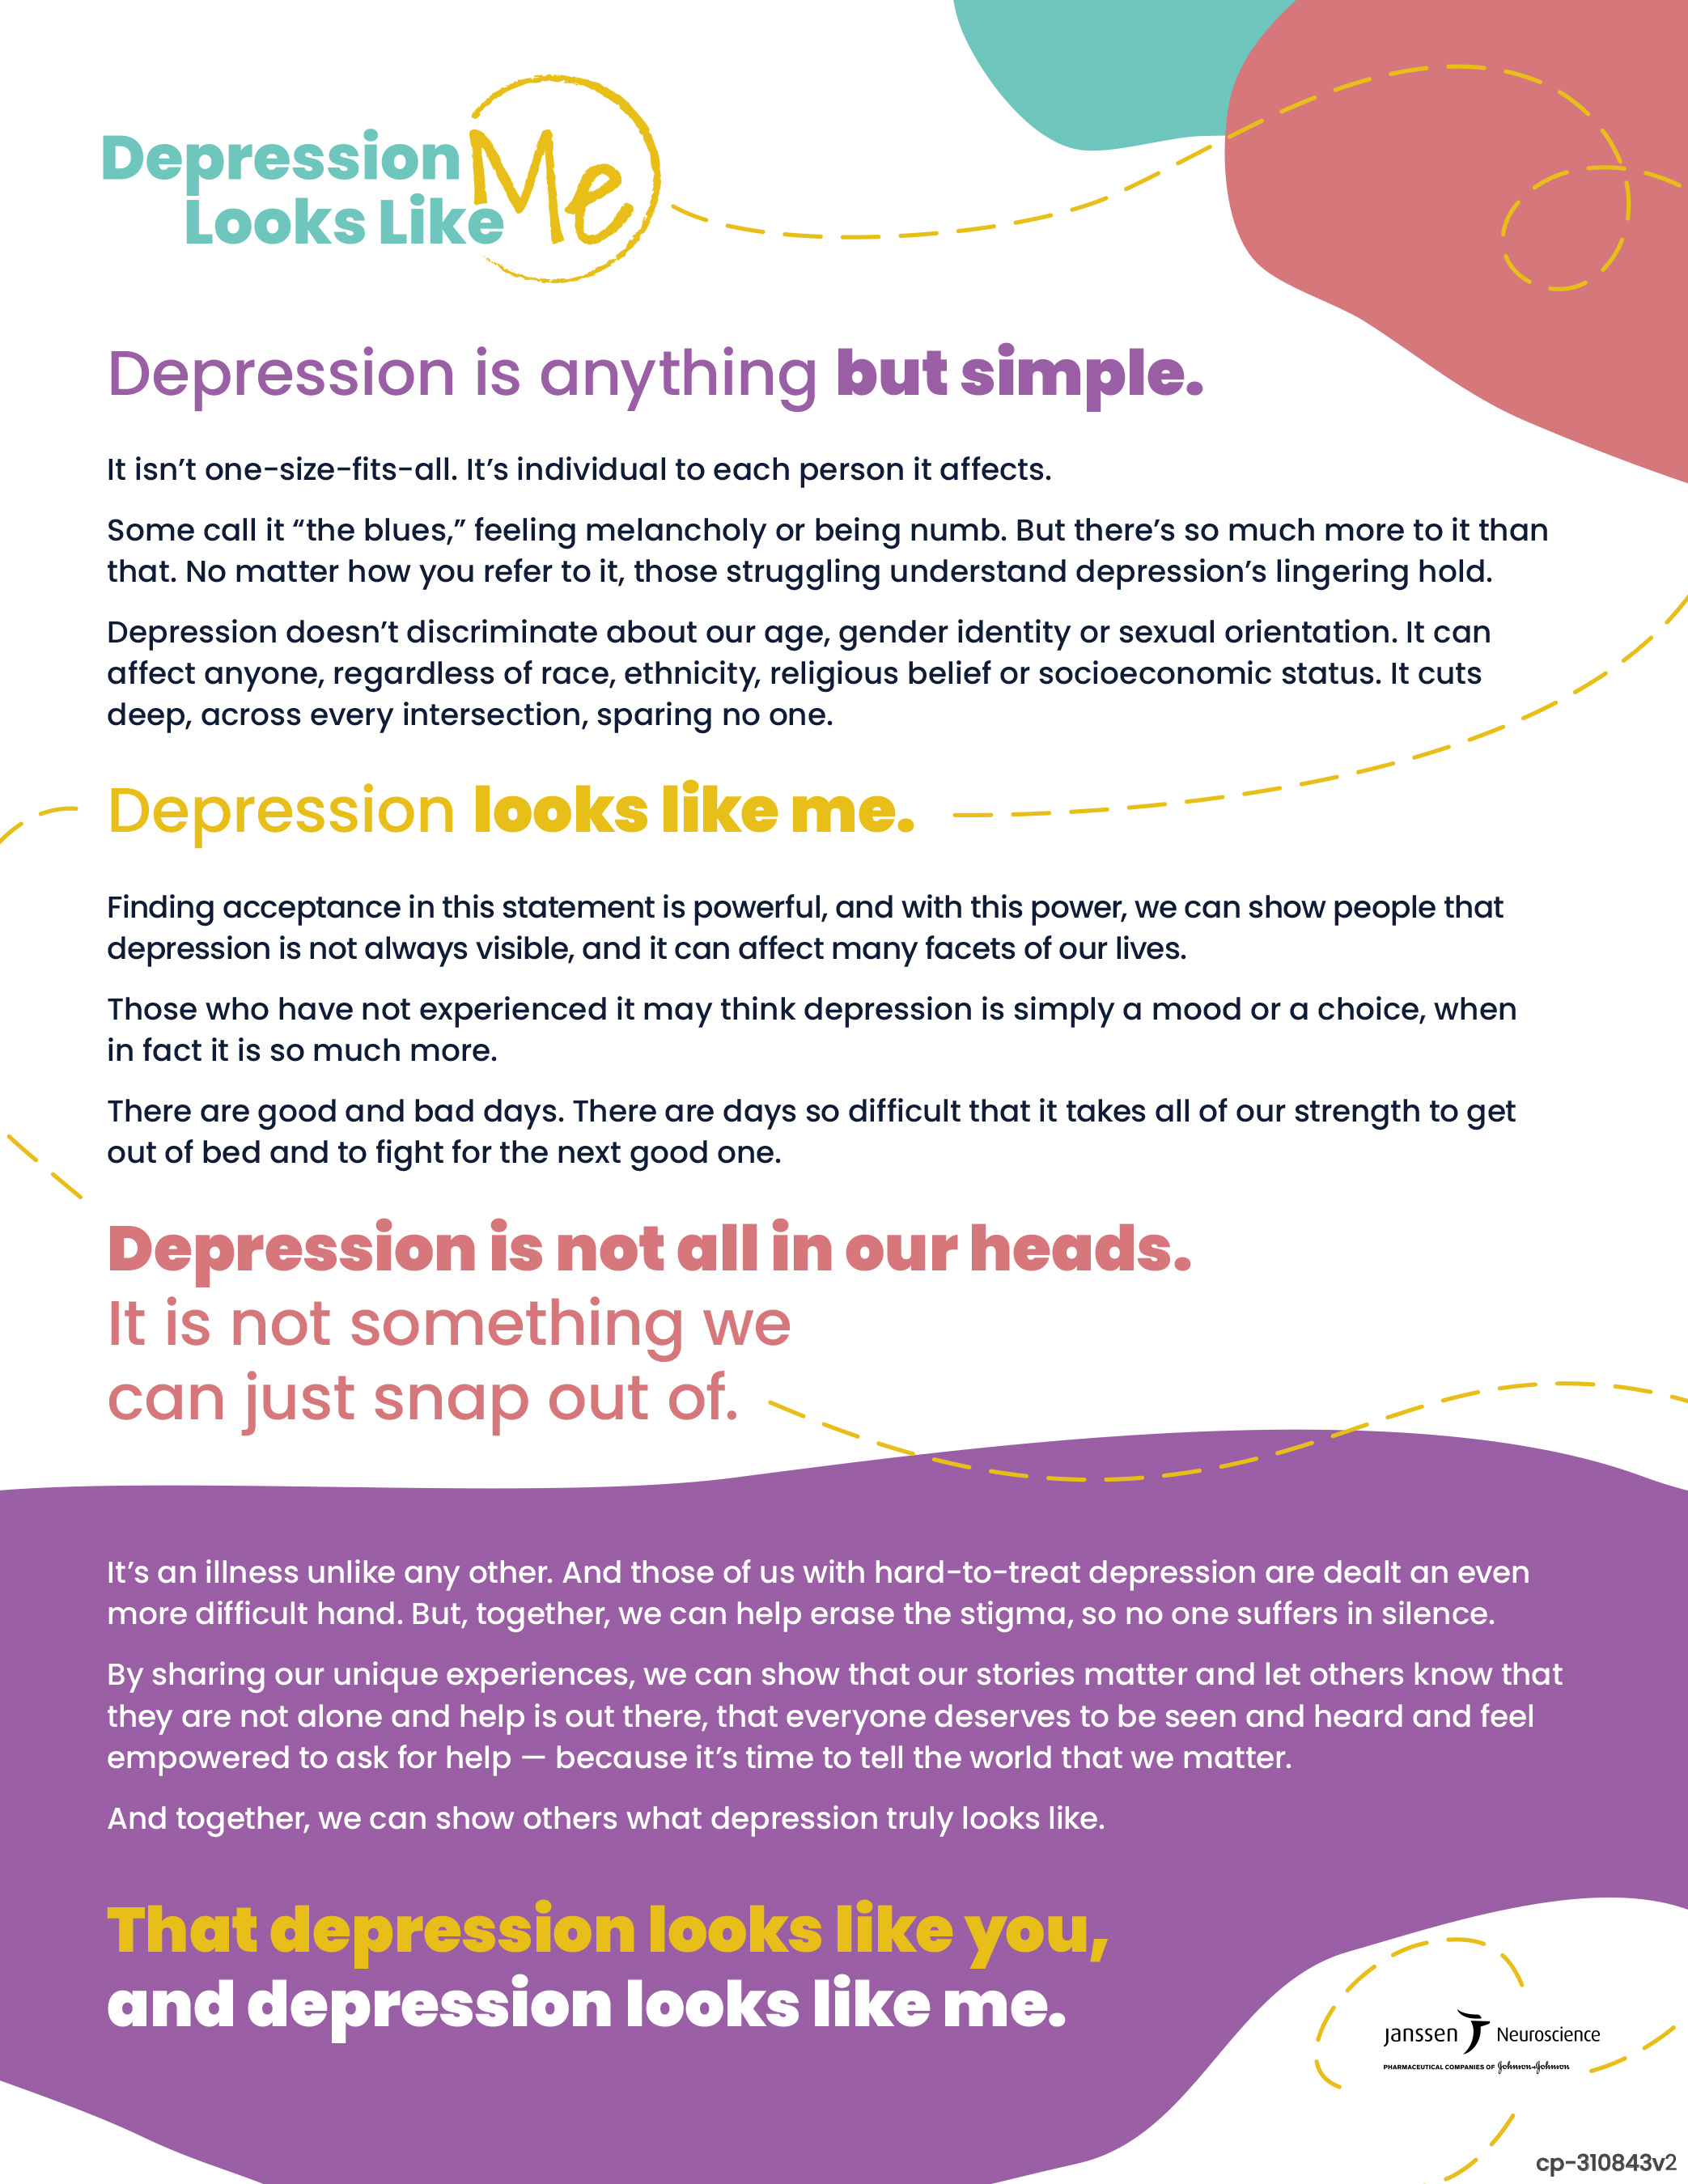 Depression Looks Like Me Campaign Manifesto